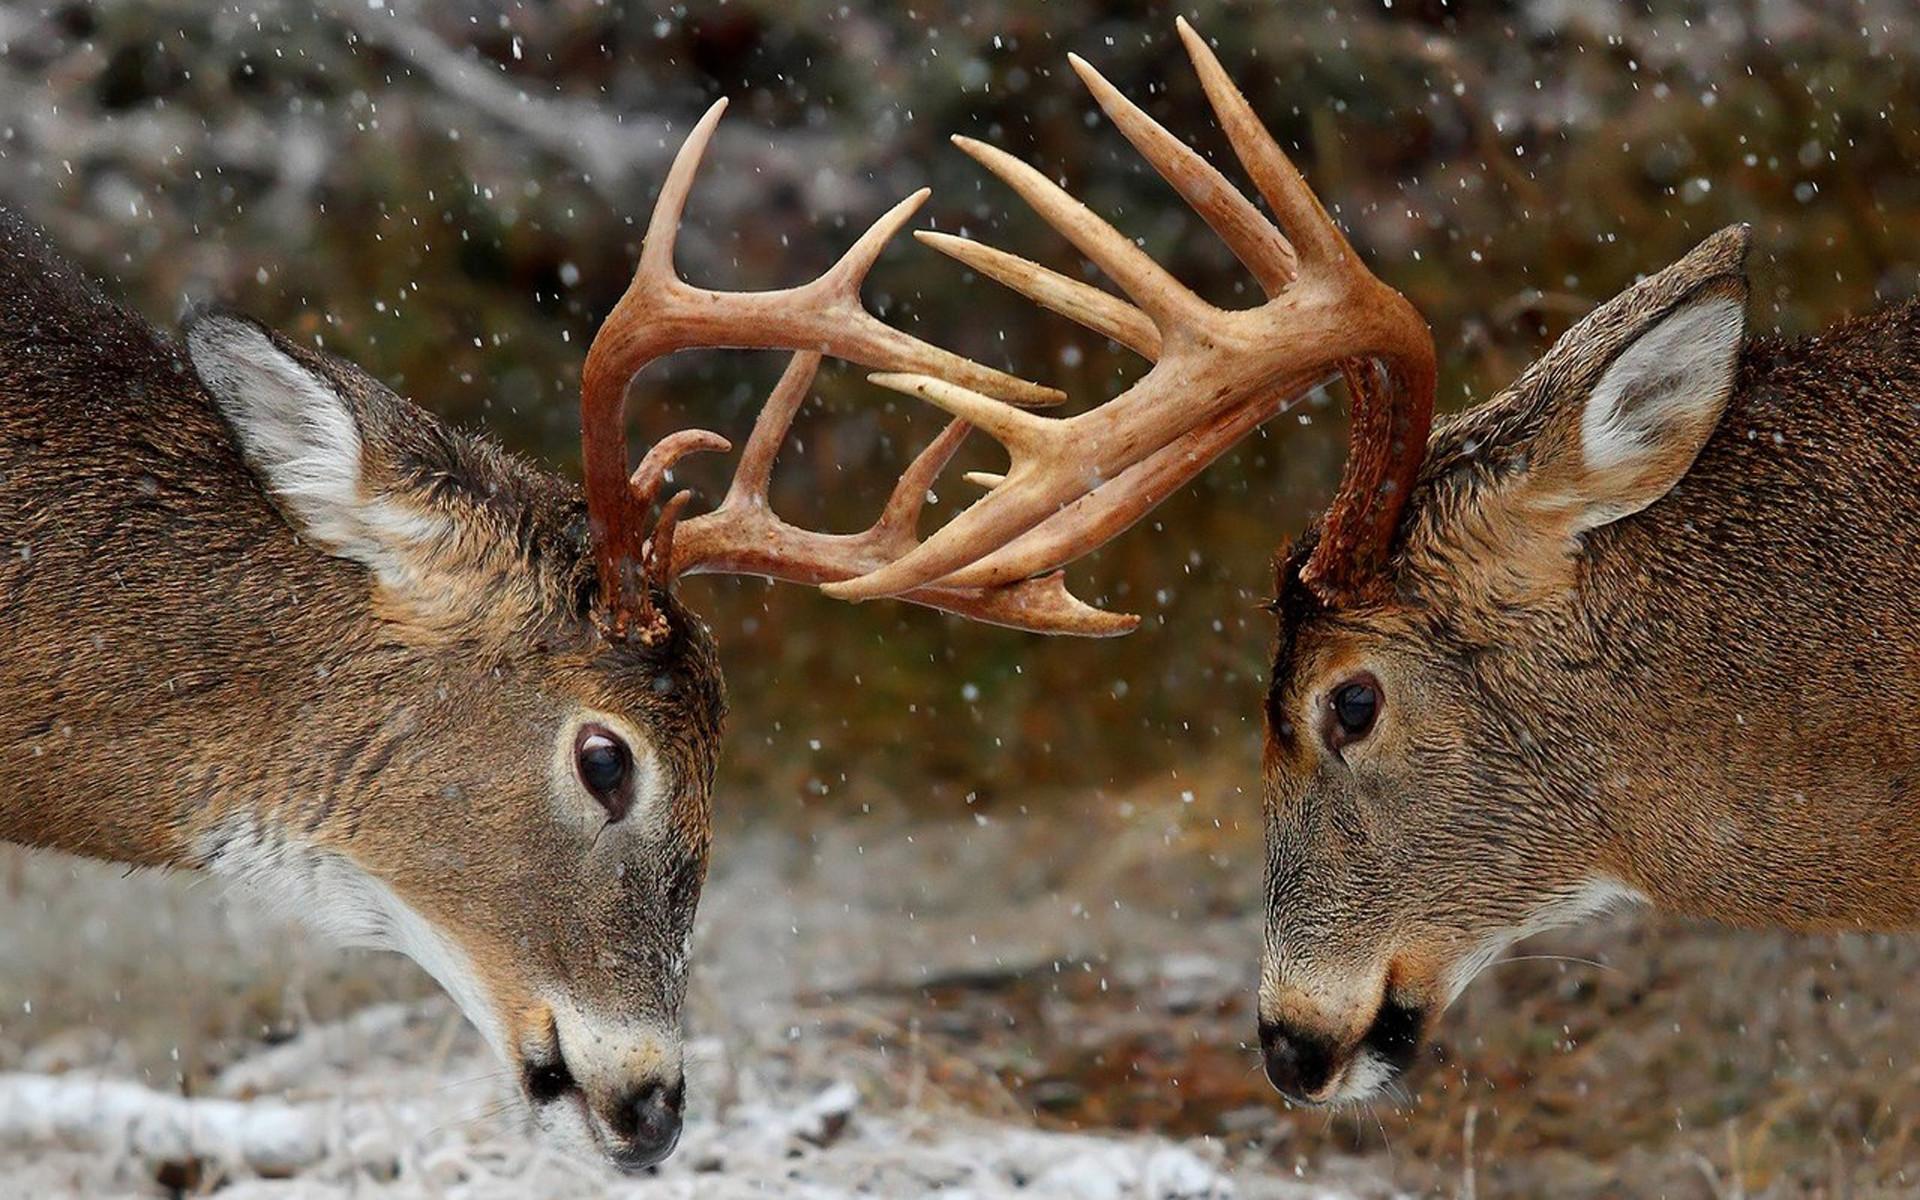 Cool Deer Wallpaper